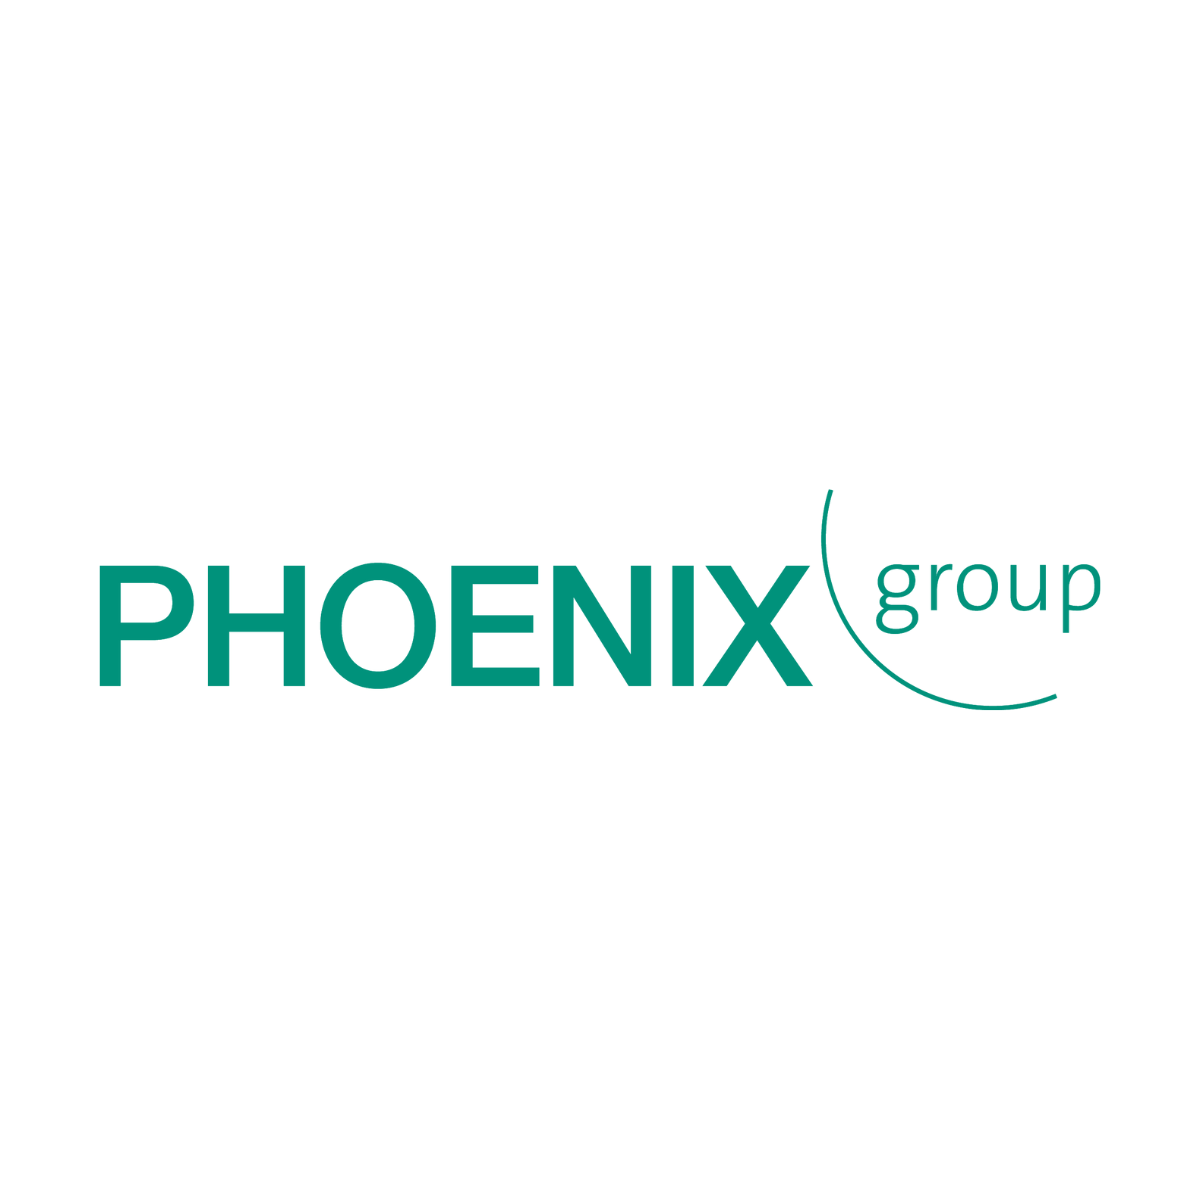 Phoenix group